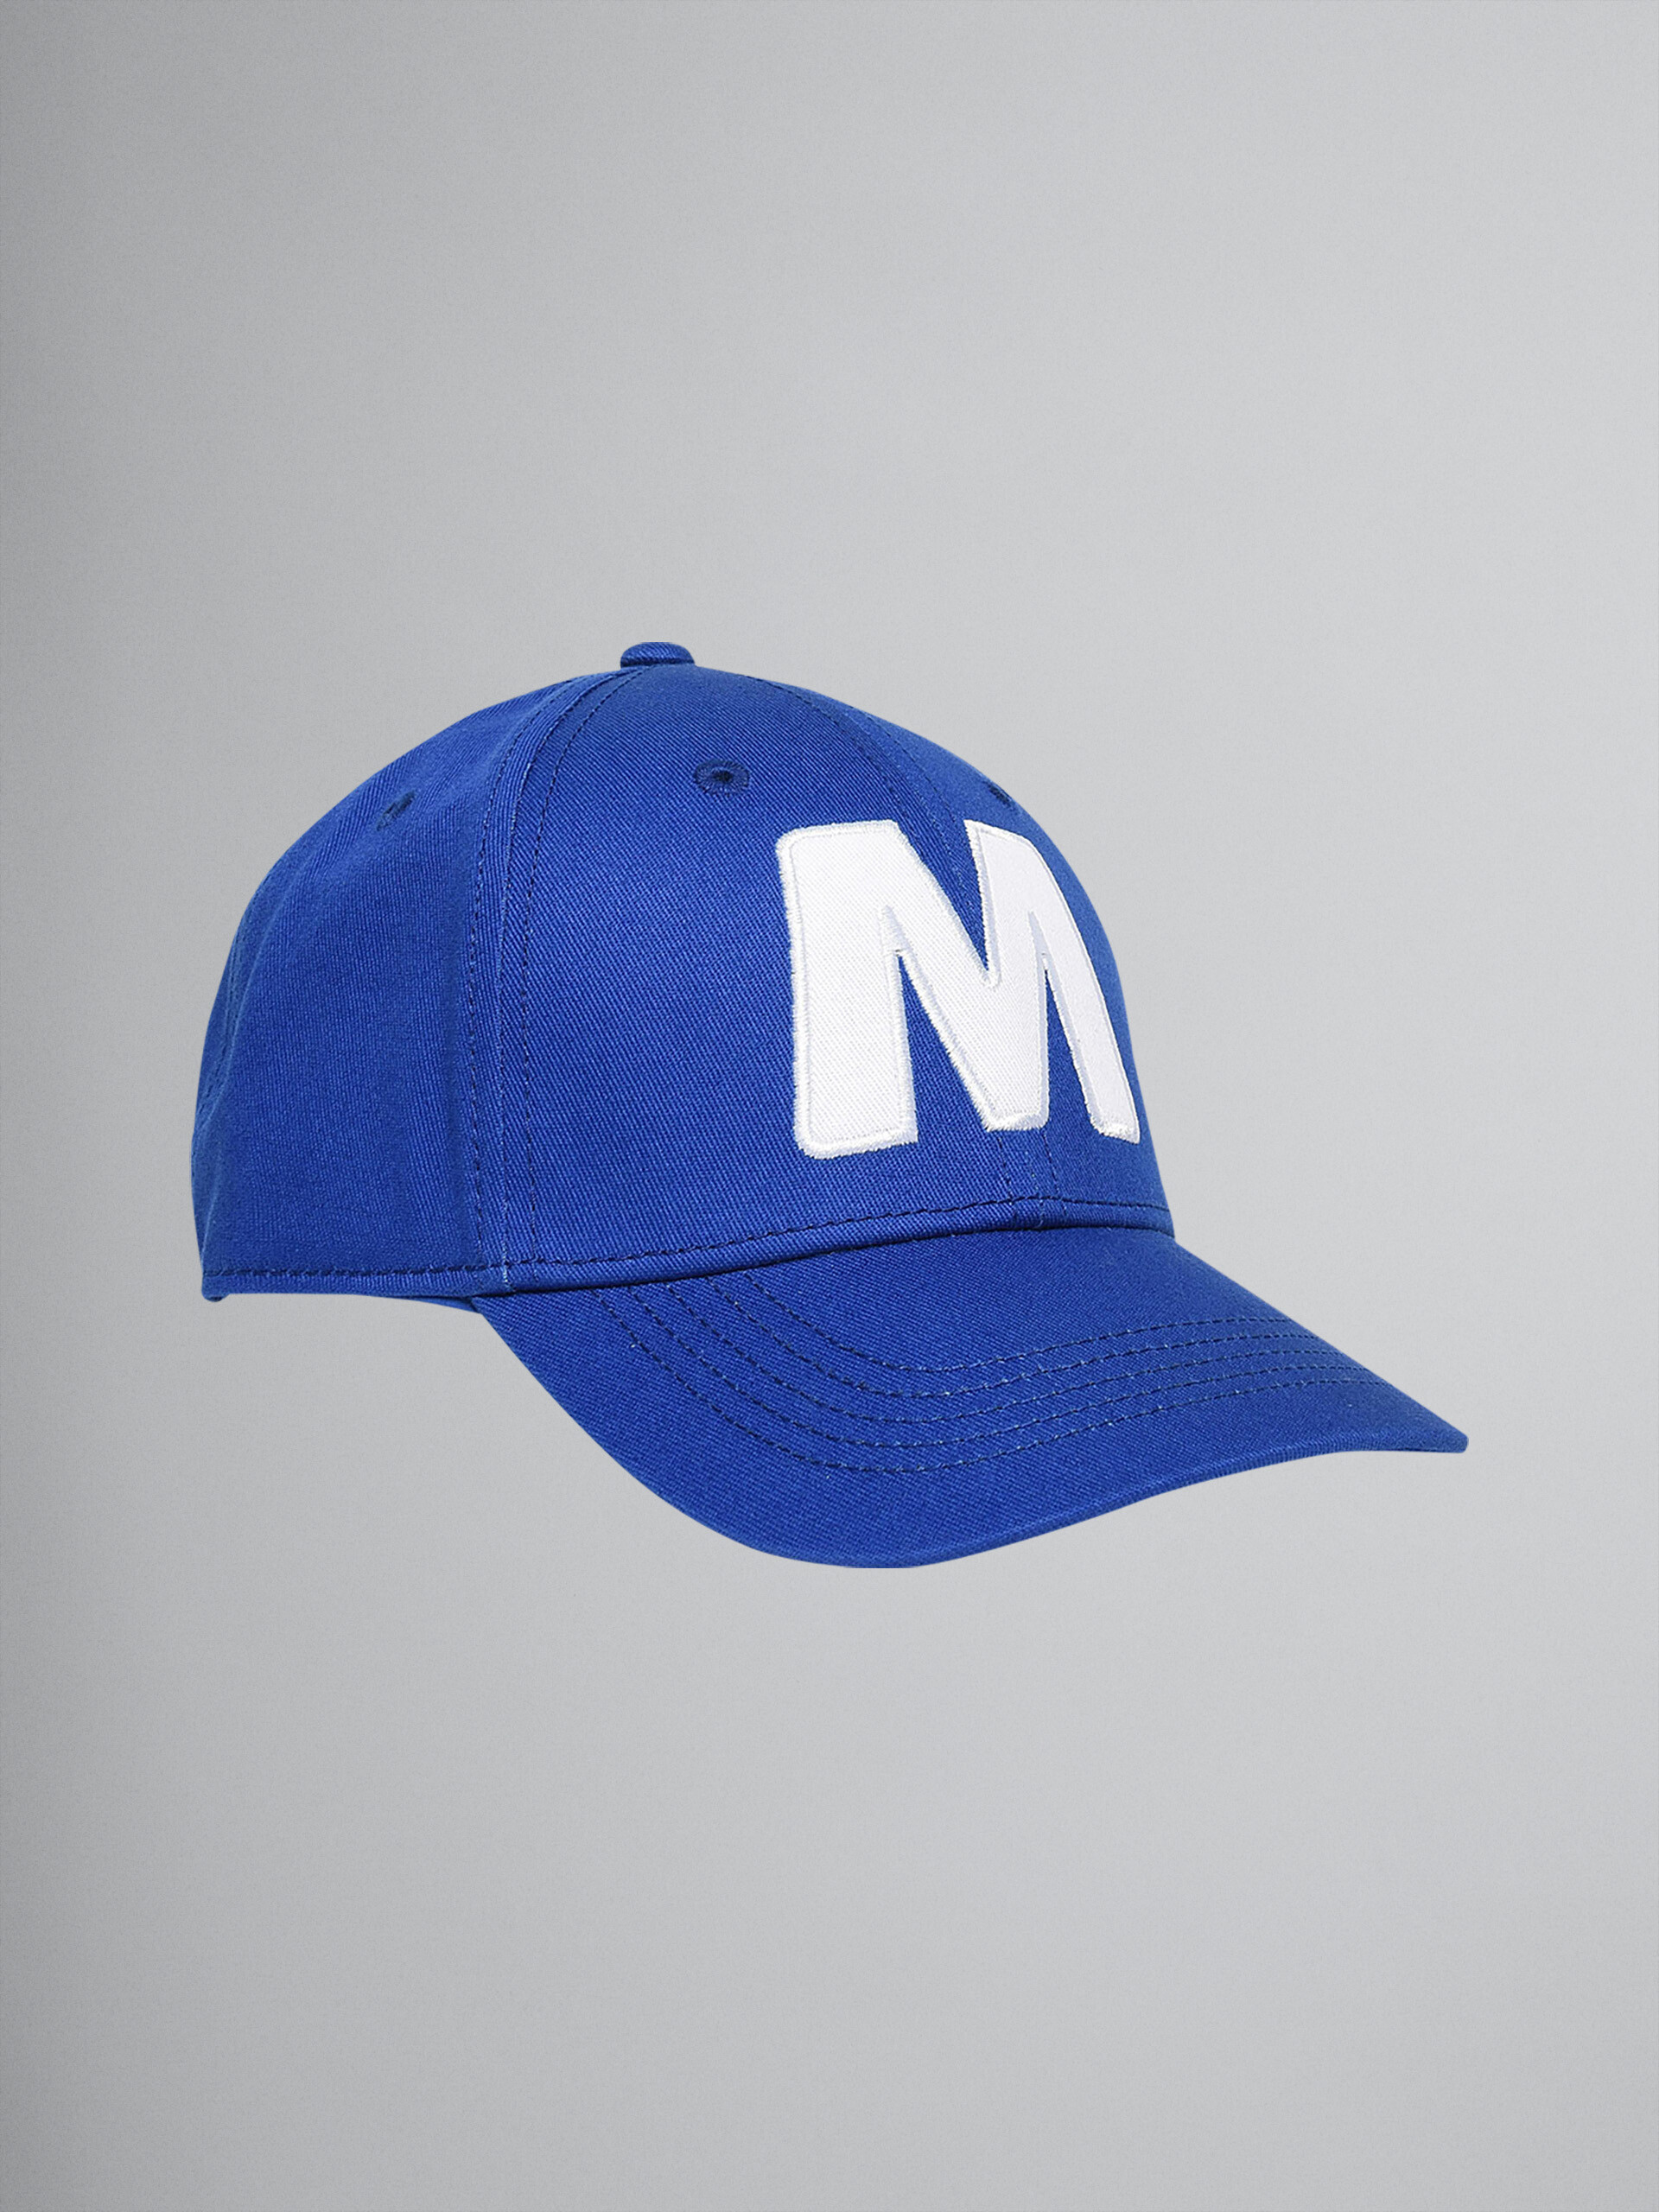 "M" 블루 코튼 개버딘 야구모자 - Caps - Image 1